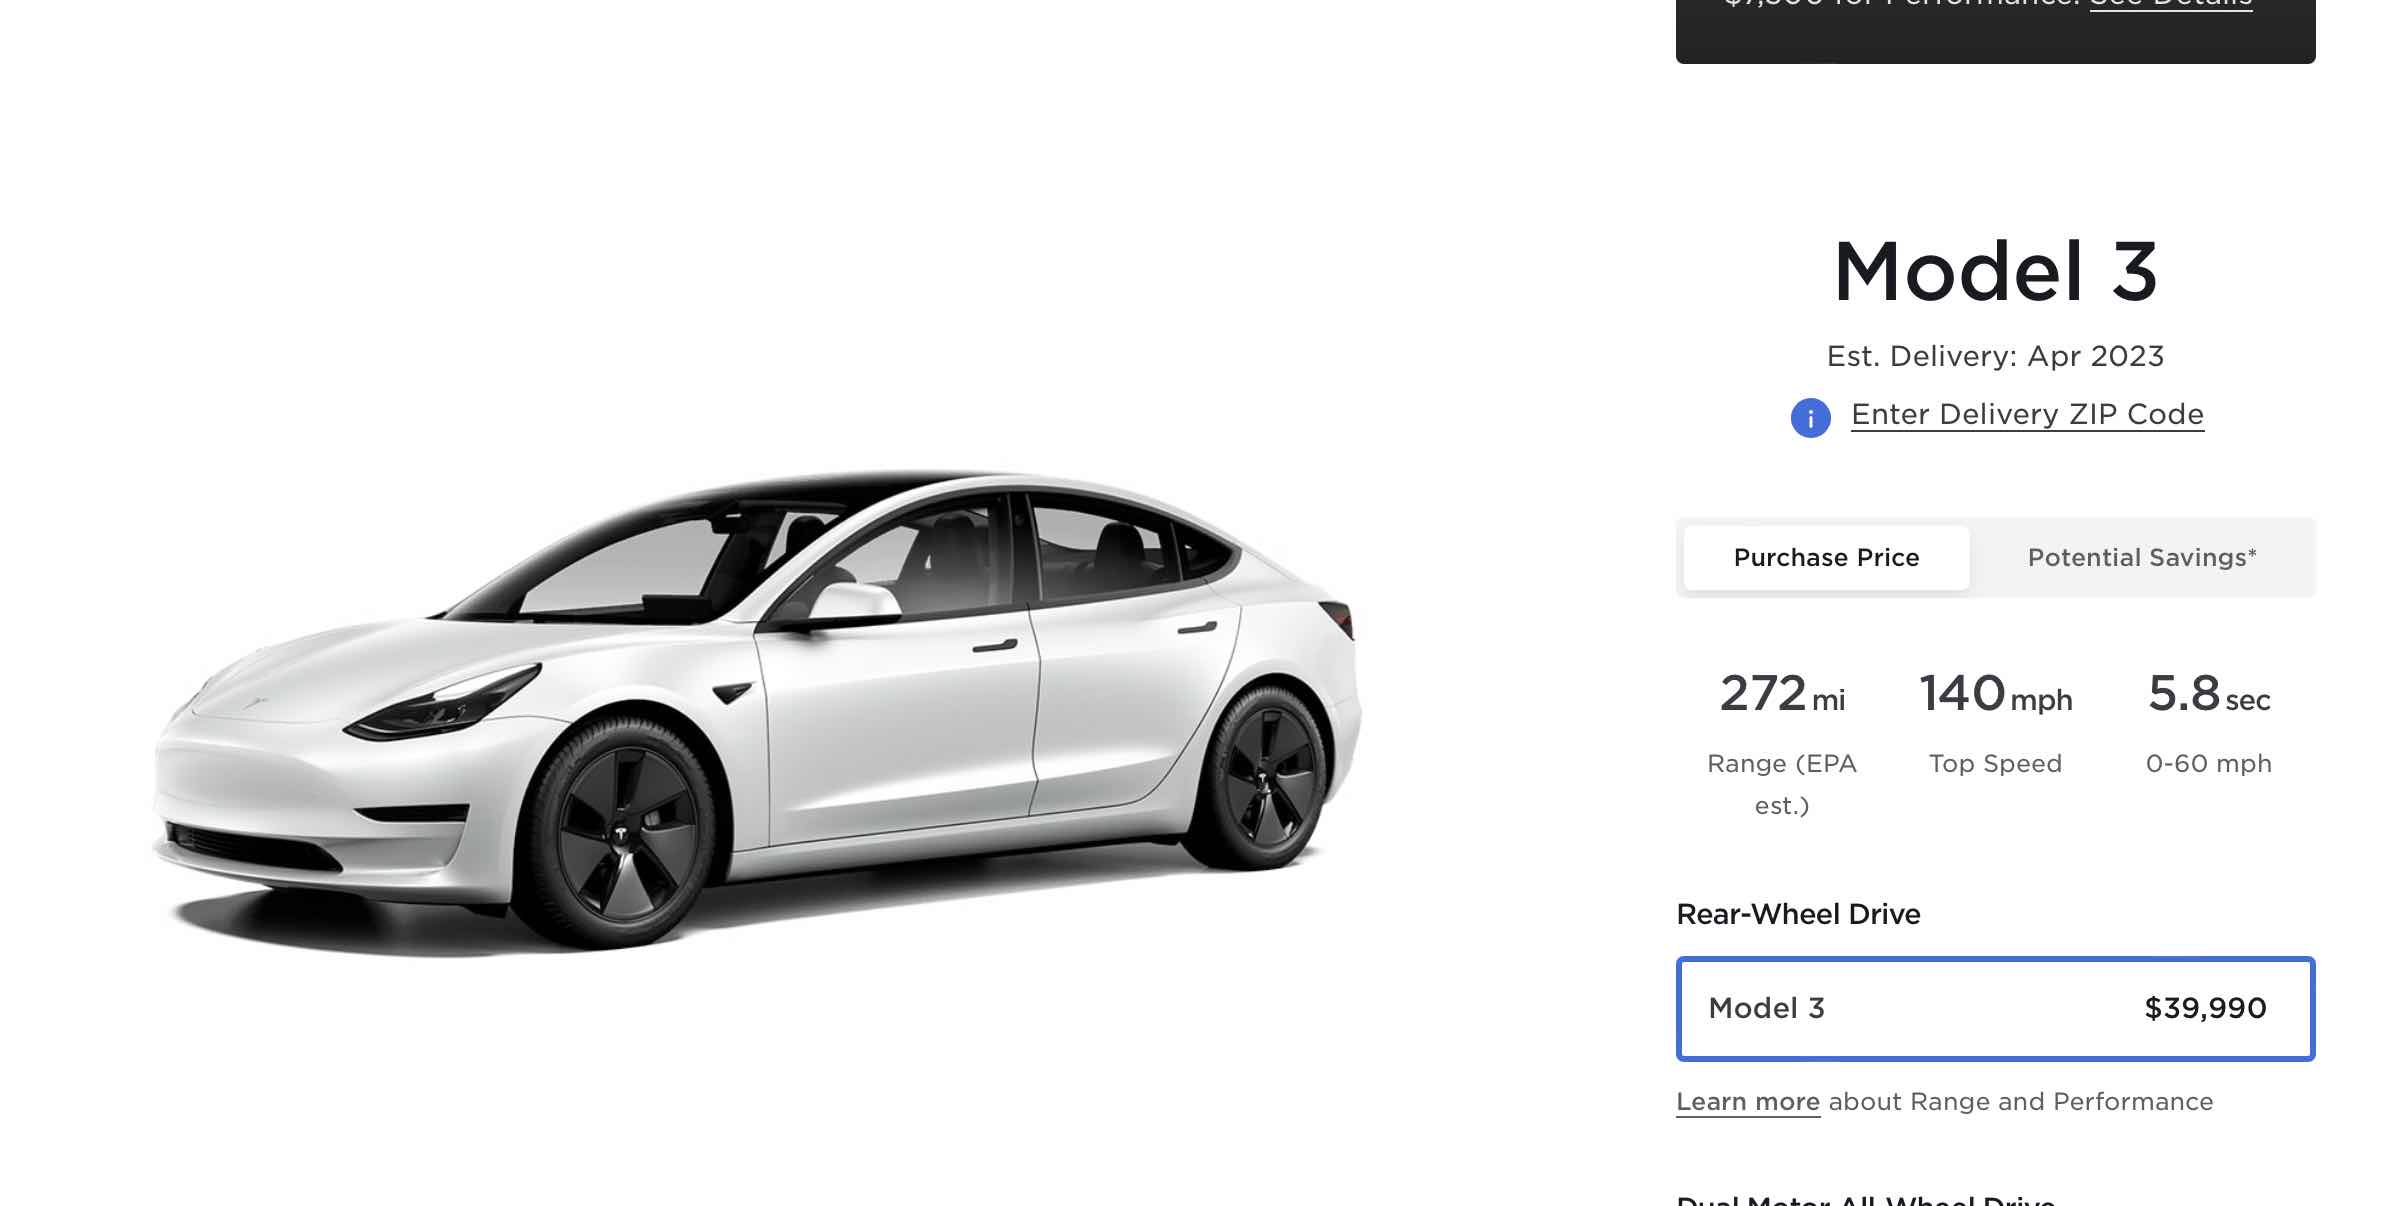 Kosten Wederzijds Transplanteren Tesla verlaagt WEER de laagste prijs, ja echt - Autoblog.nl